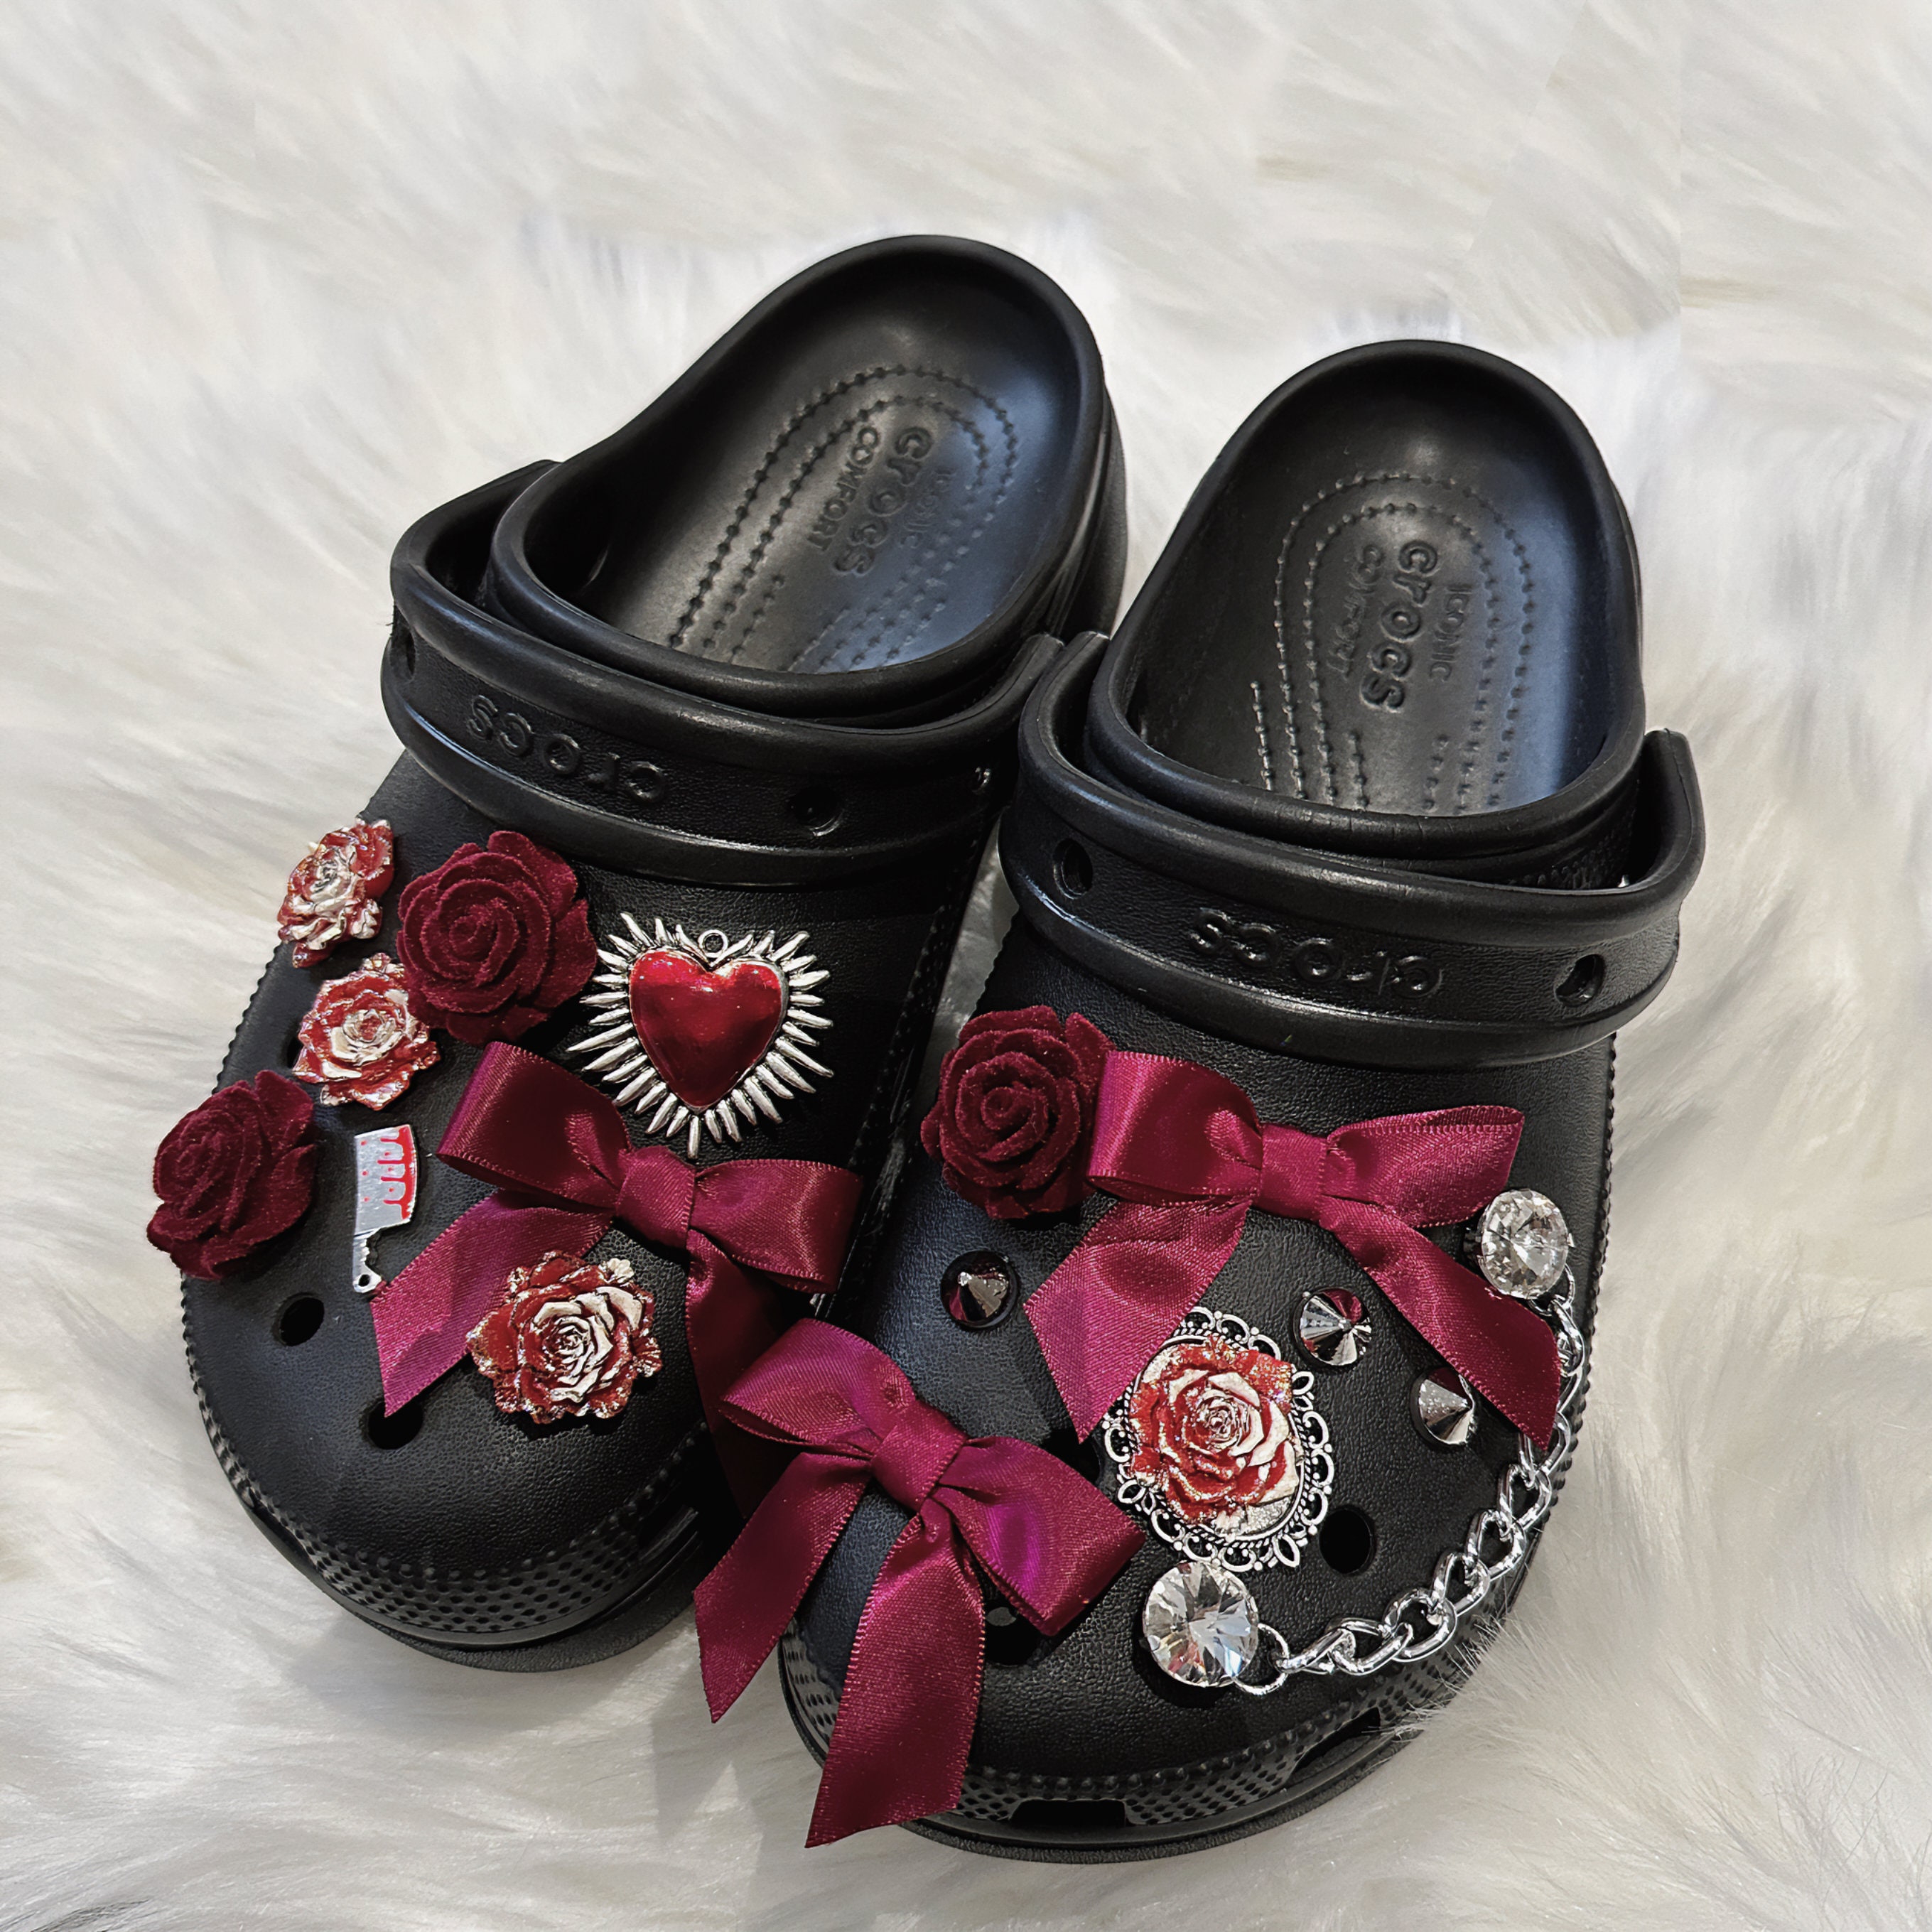 1Pcs Famous Singer Taylor Shoe Charms Accessories Shoe Buckle Decoration  For Croc Jibz Shoes Fans Party